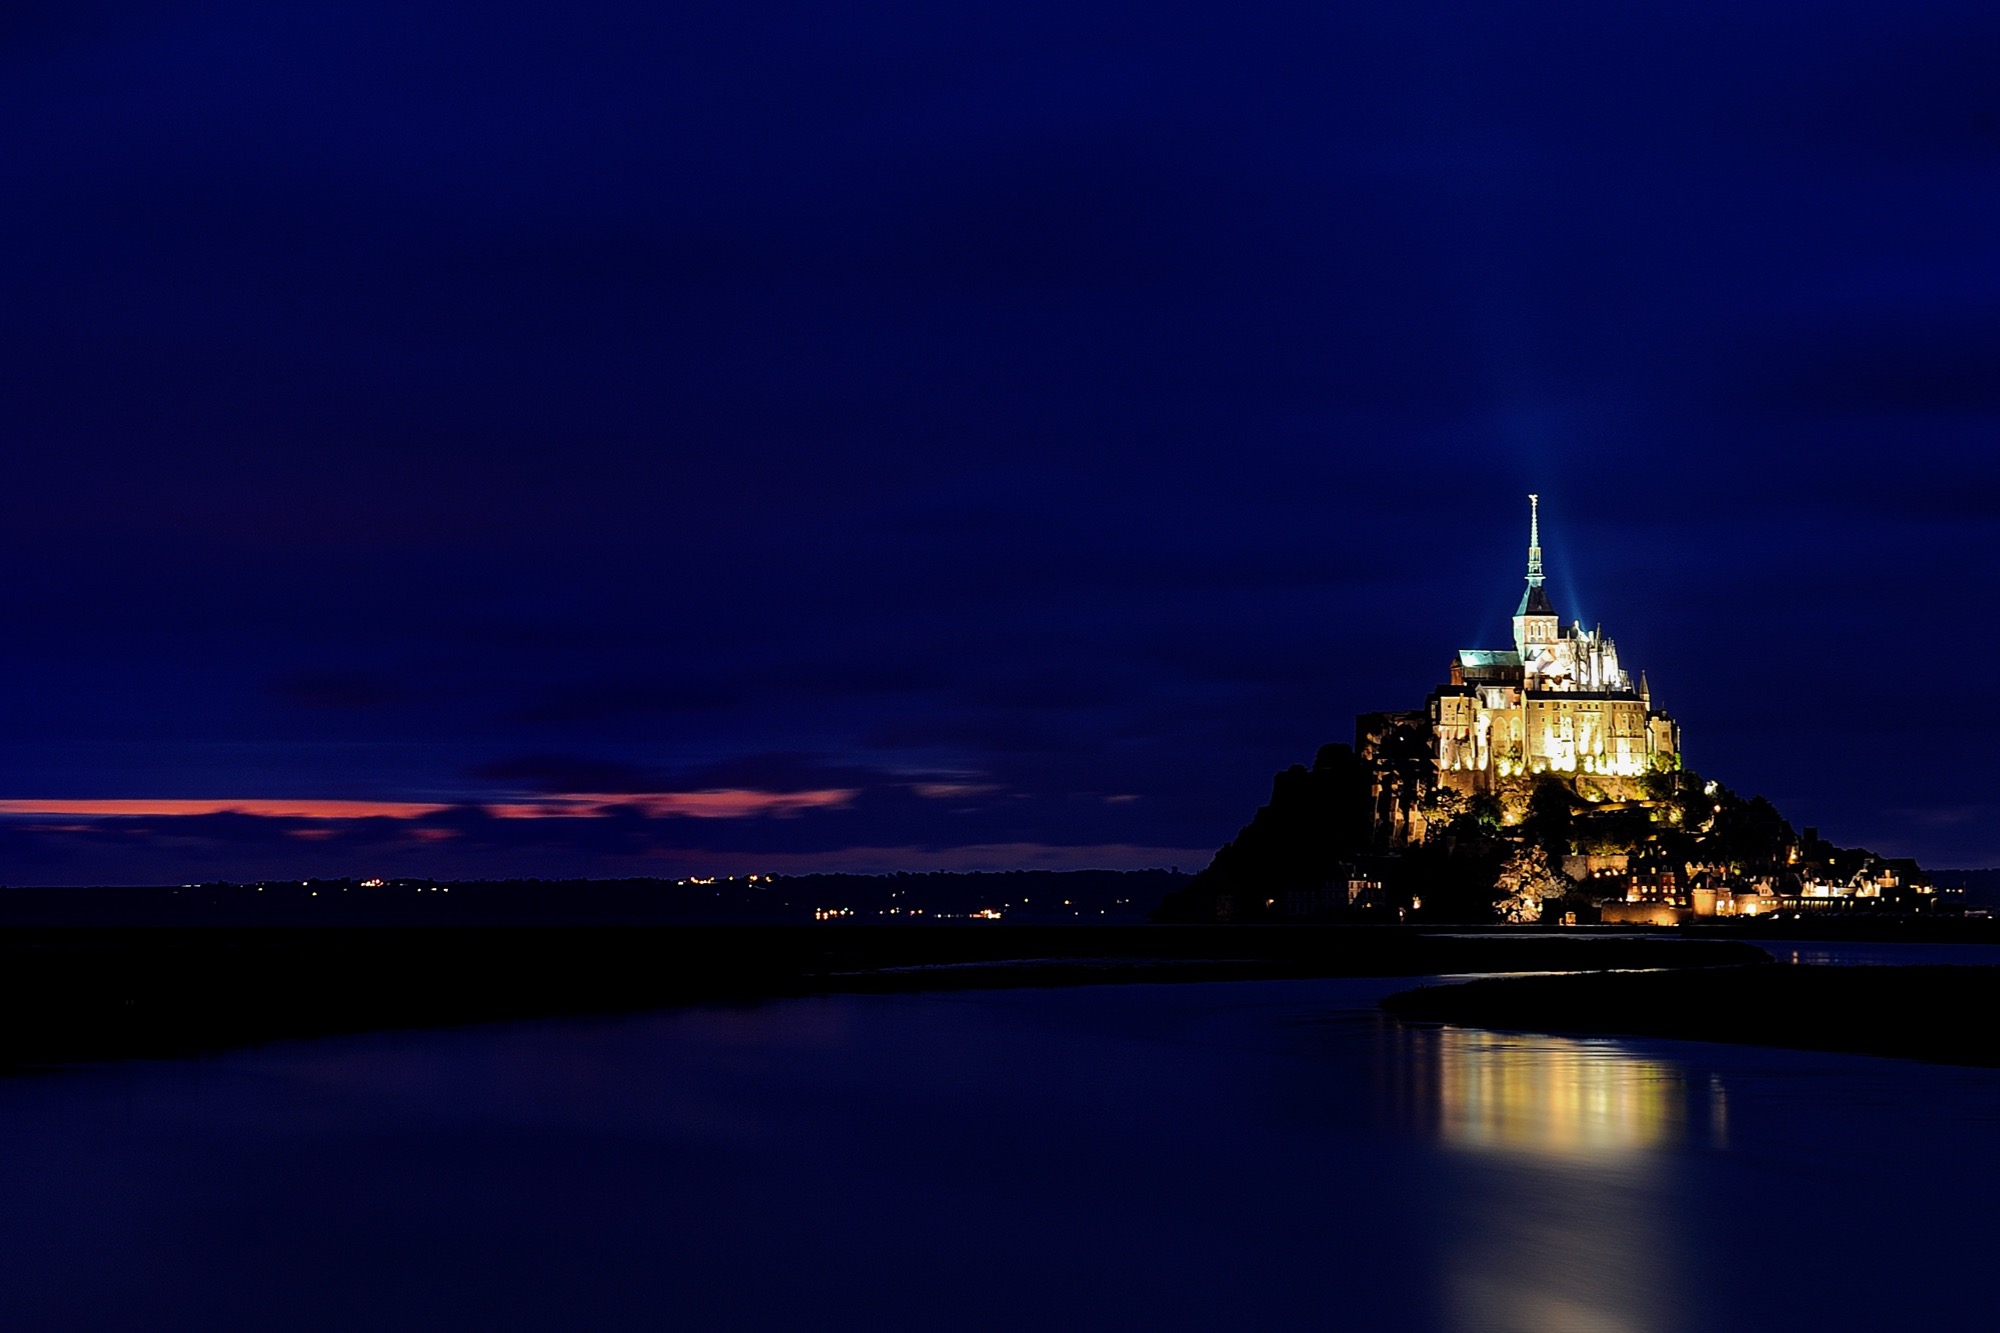 Le Mont-Saint-Michel (1).jpg